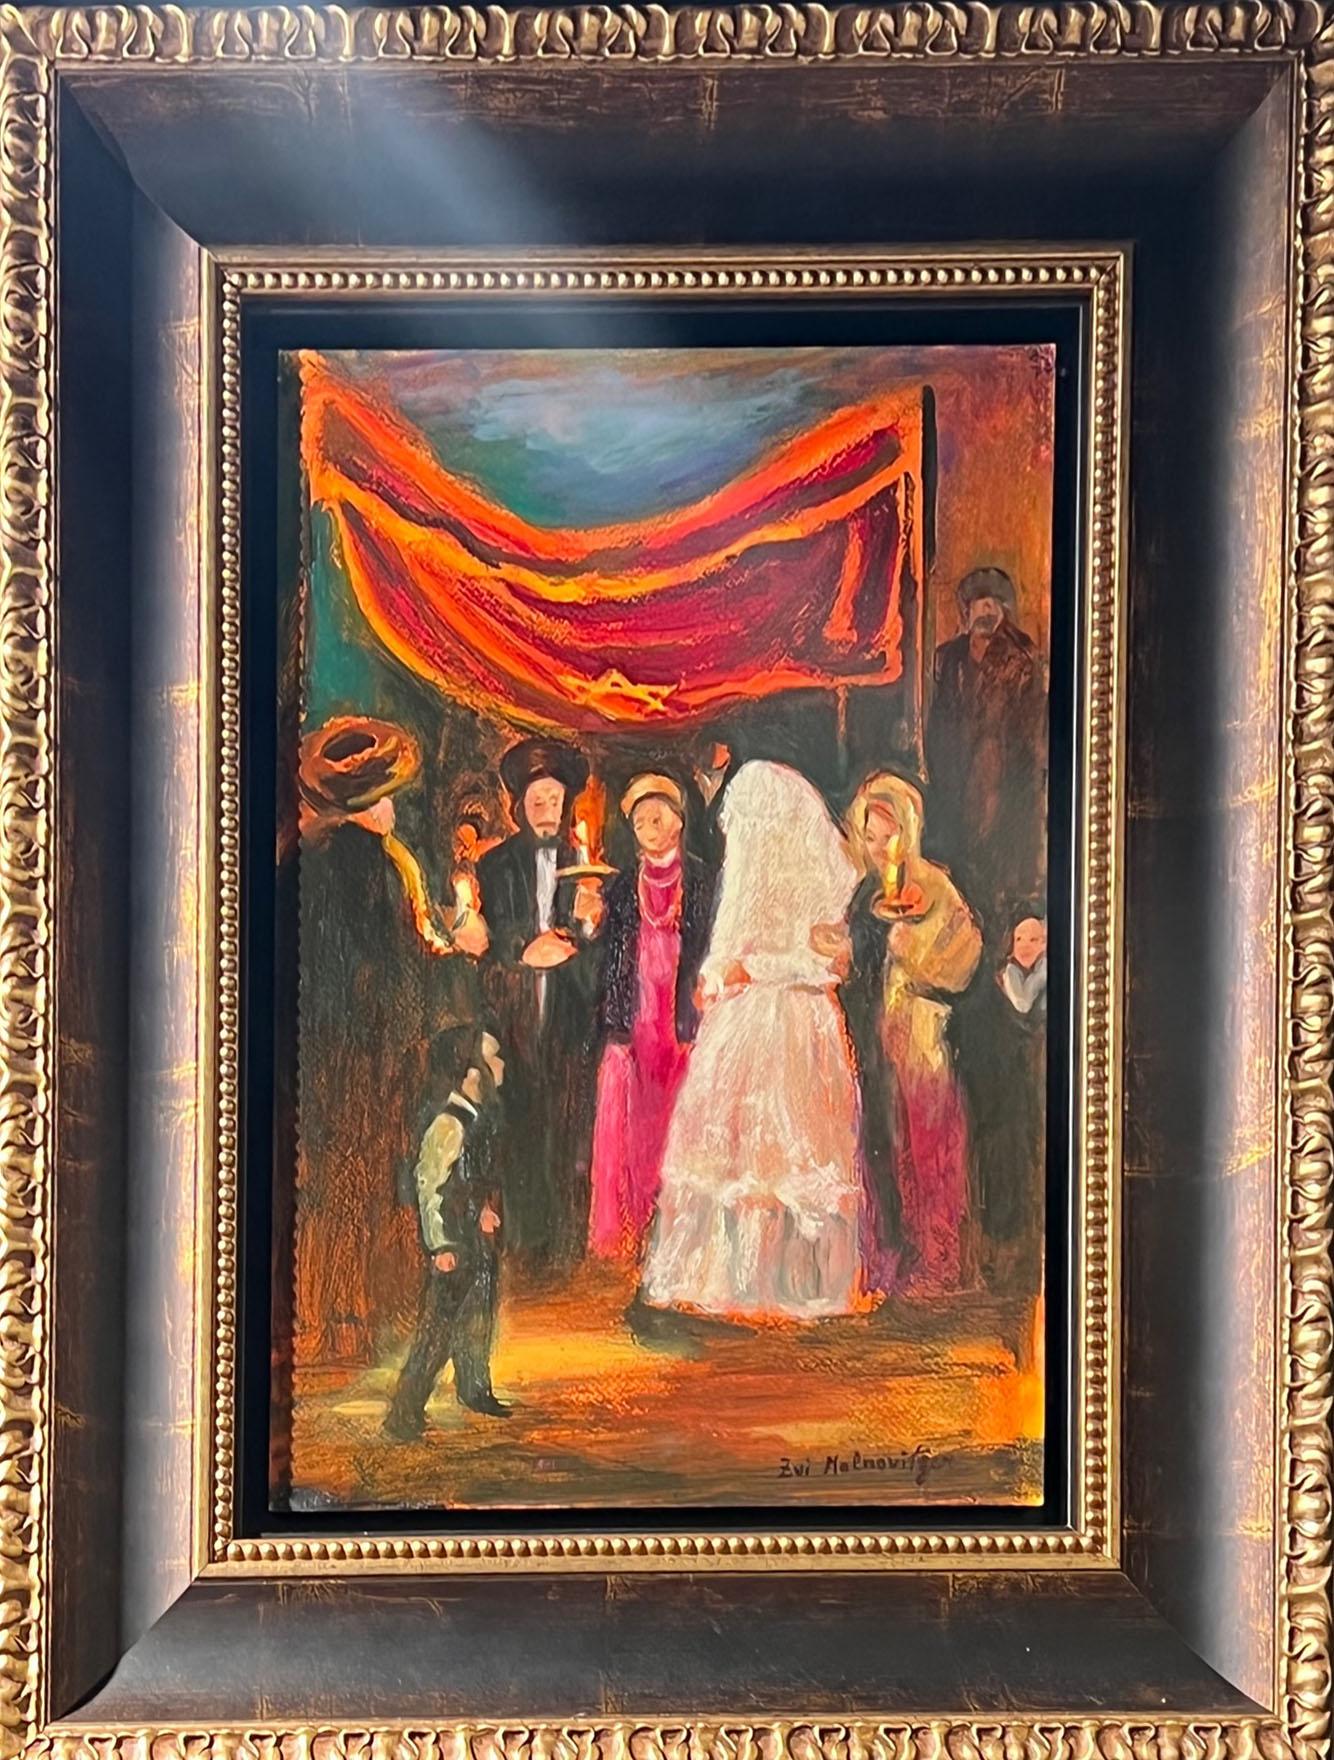 Jewish wedding scene oil colorful painting , Israeli Judaica art - Painting by Zvi Malnovitzer